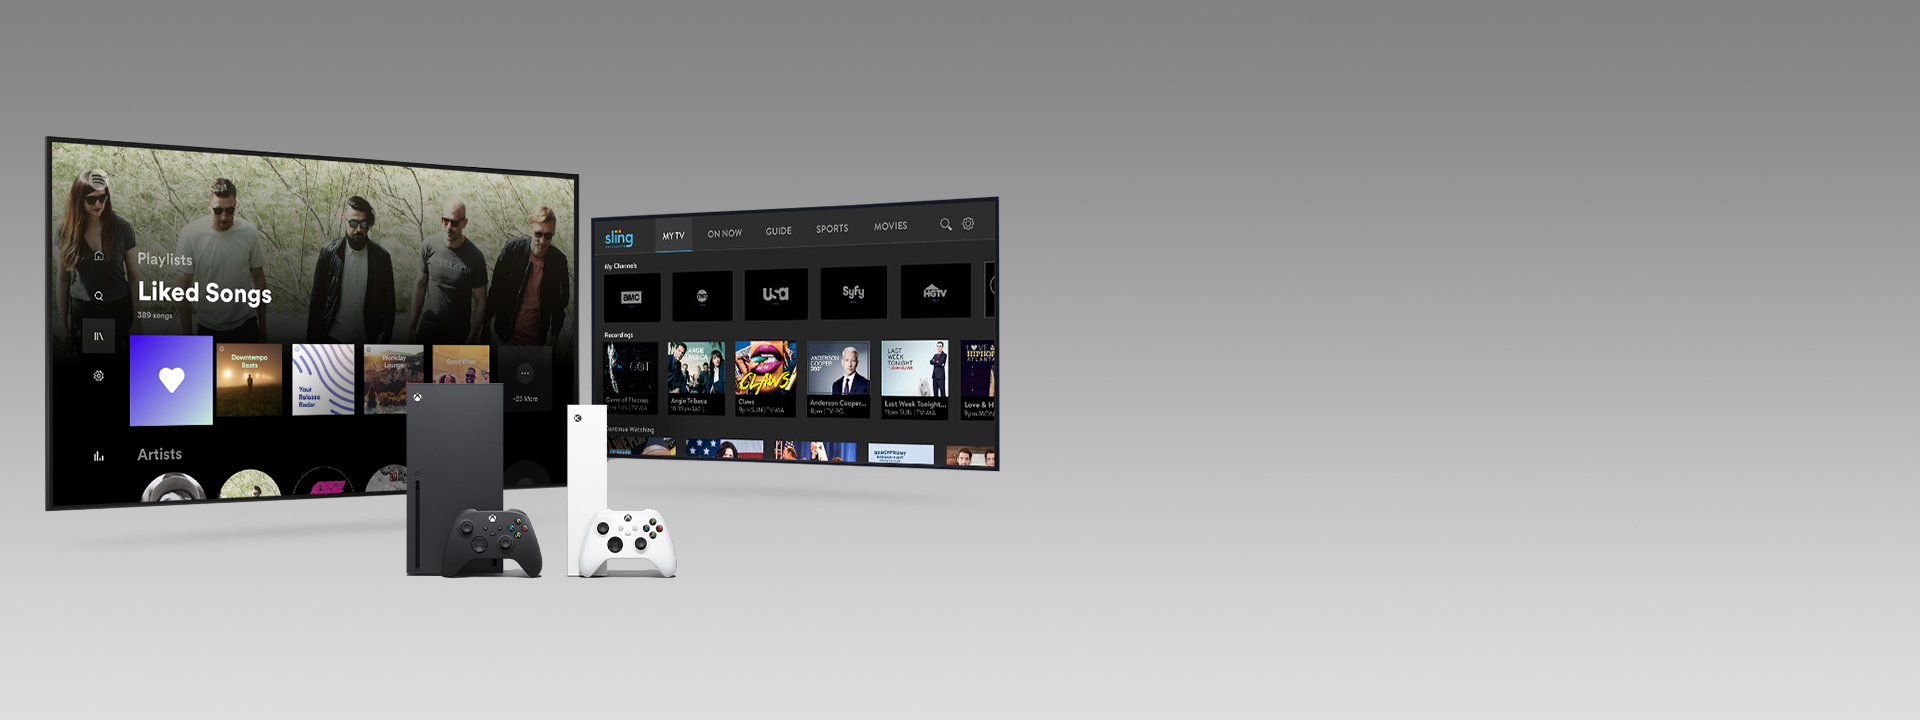 Xbox Series X ja Series S sekä ohjaimet kahden sovelluskäyttöliittymää esittävän television edessä.